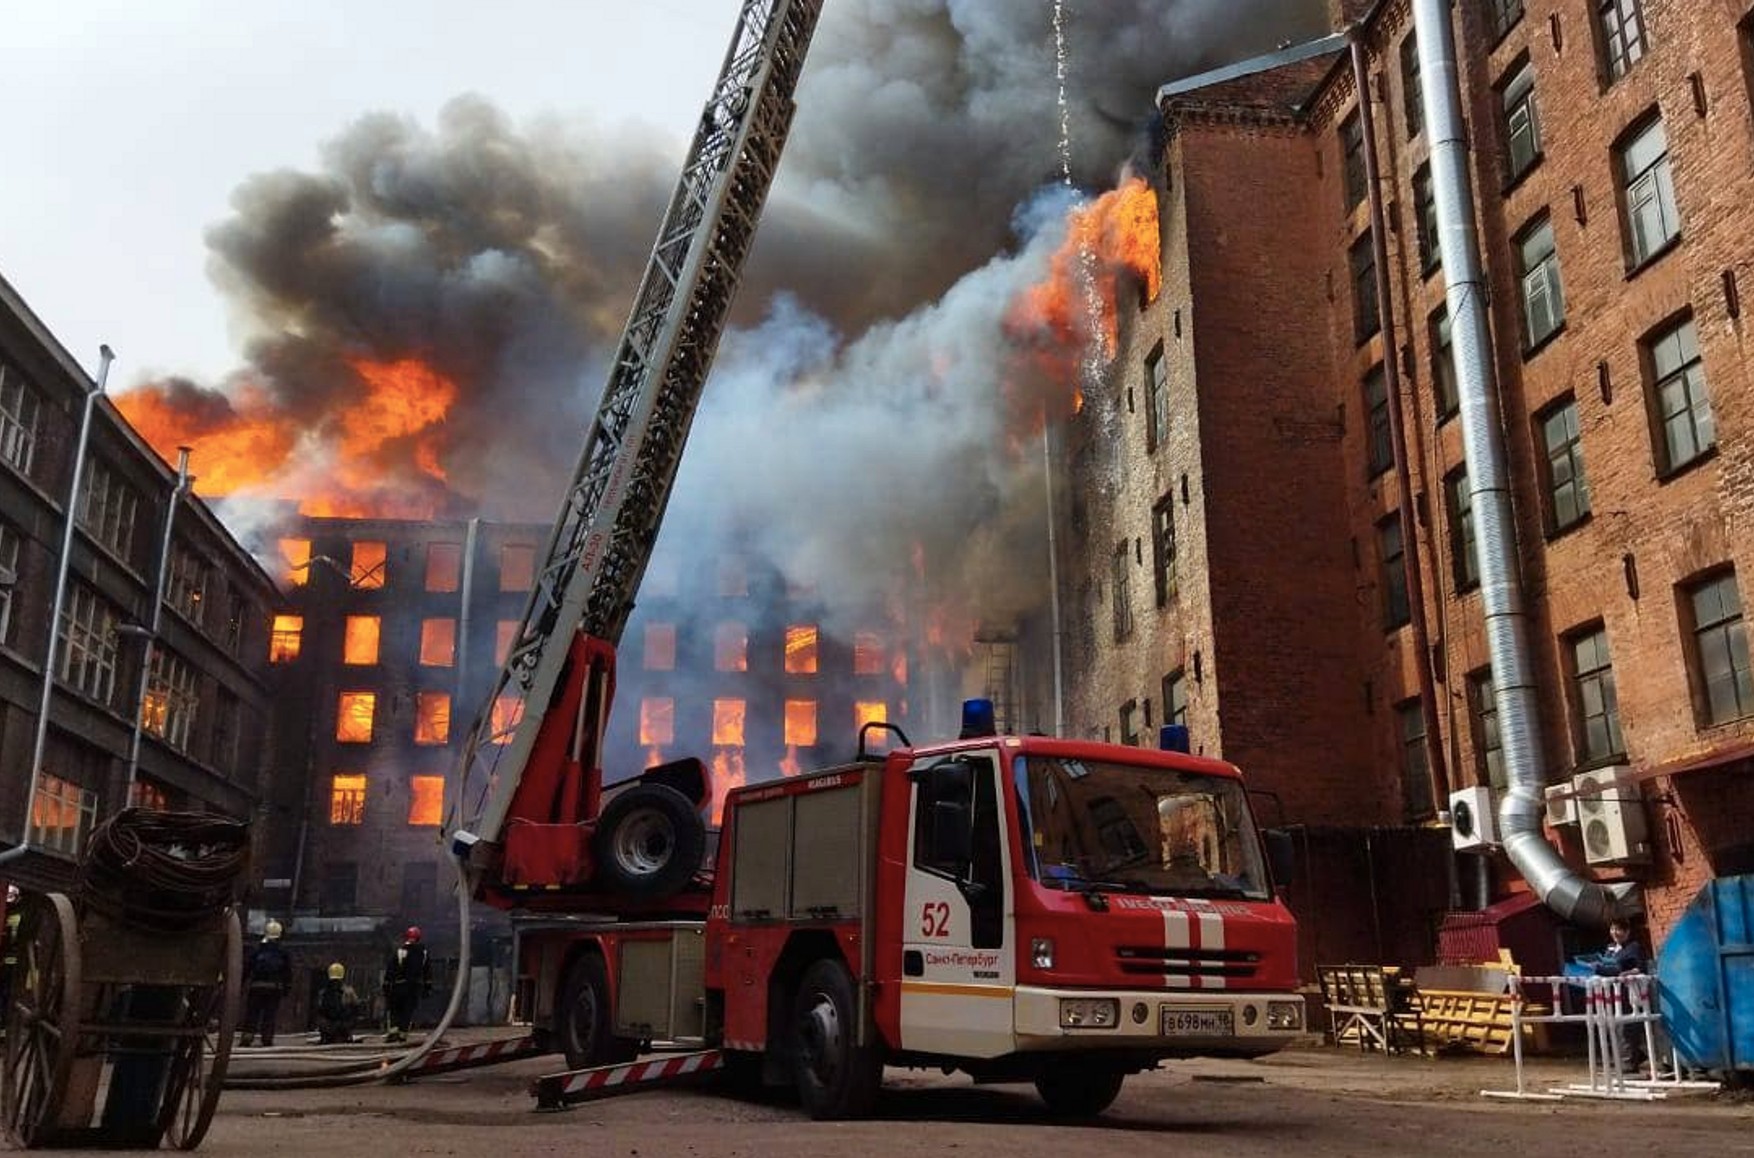 У Санкт-Петербурзі стався сильна пожежа. Один пожежний загинув, двоє серйозно постраждали